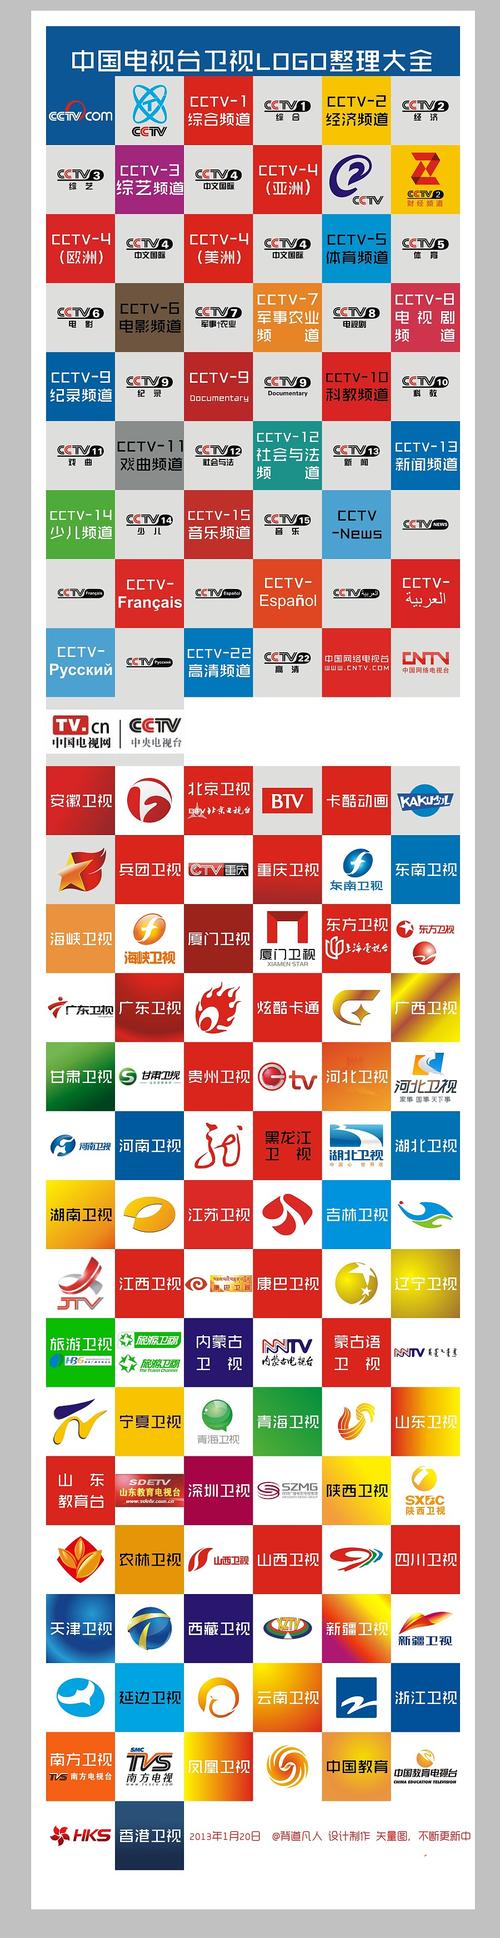 2013 04月最新 中国电视台卫视logo整理大全